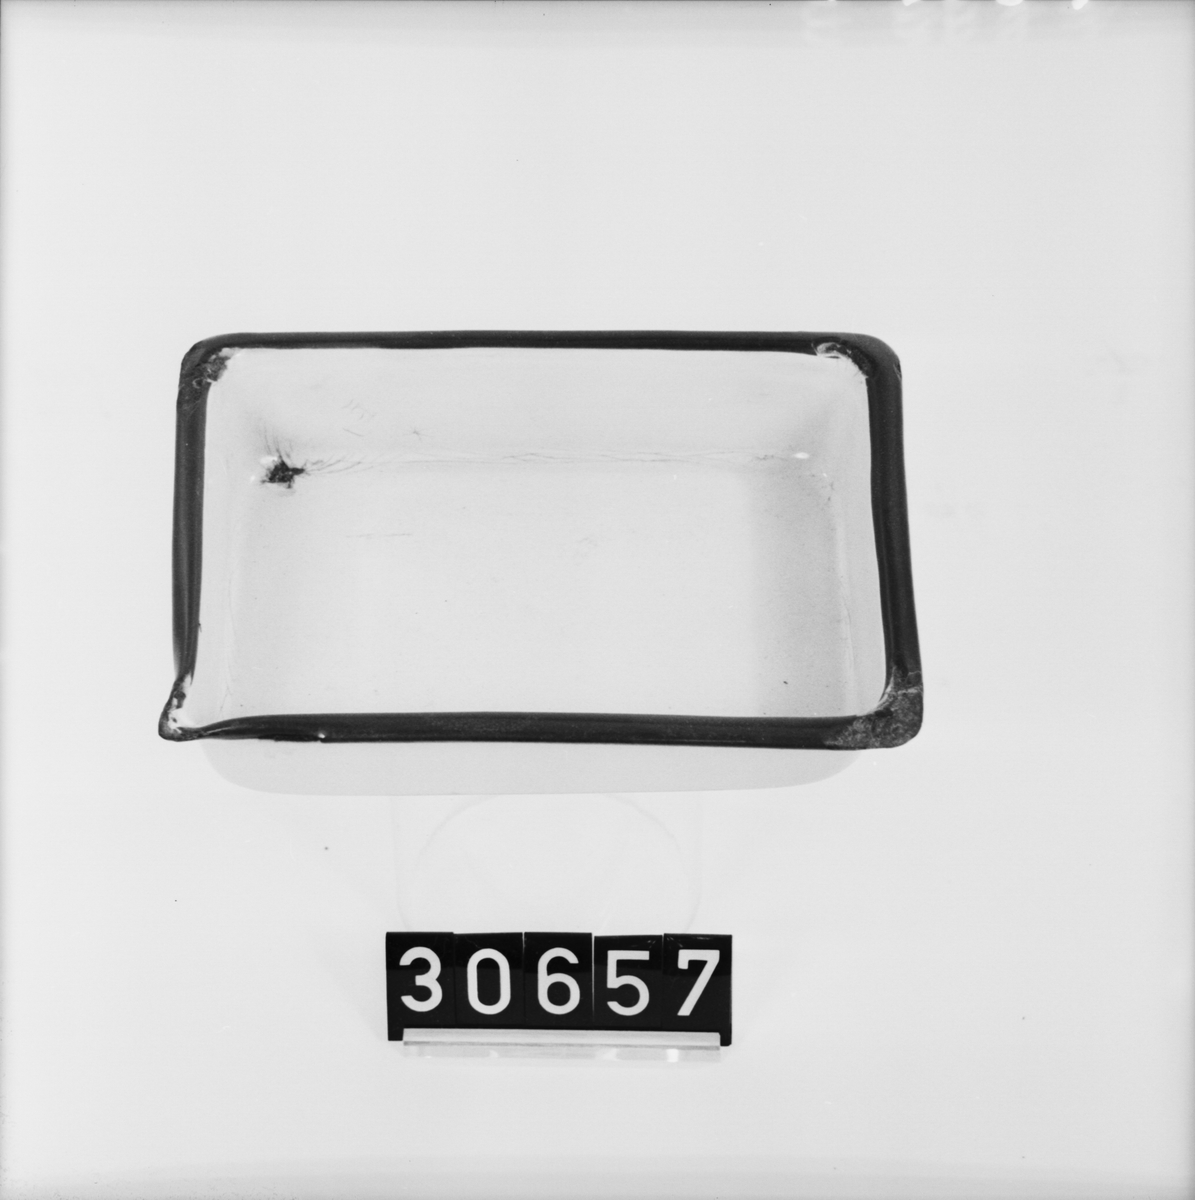 Framkallningsskål av vit, emaljerad plåt, för plåtar 9 x 12 cm.